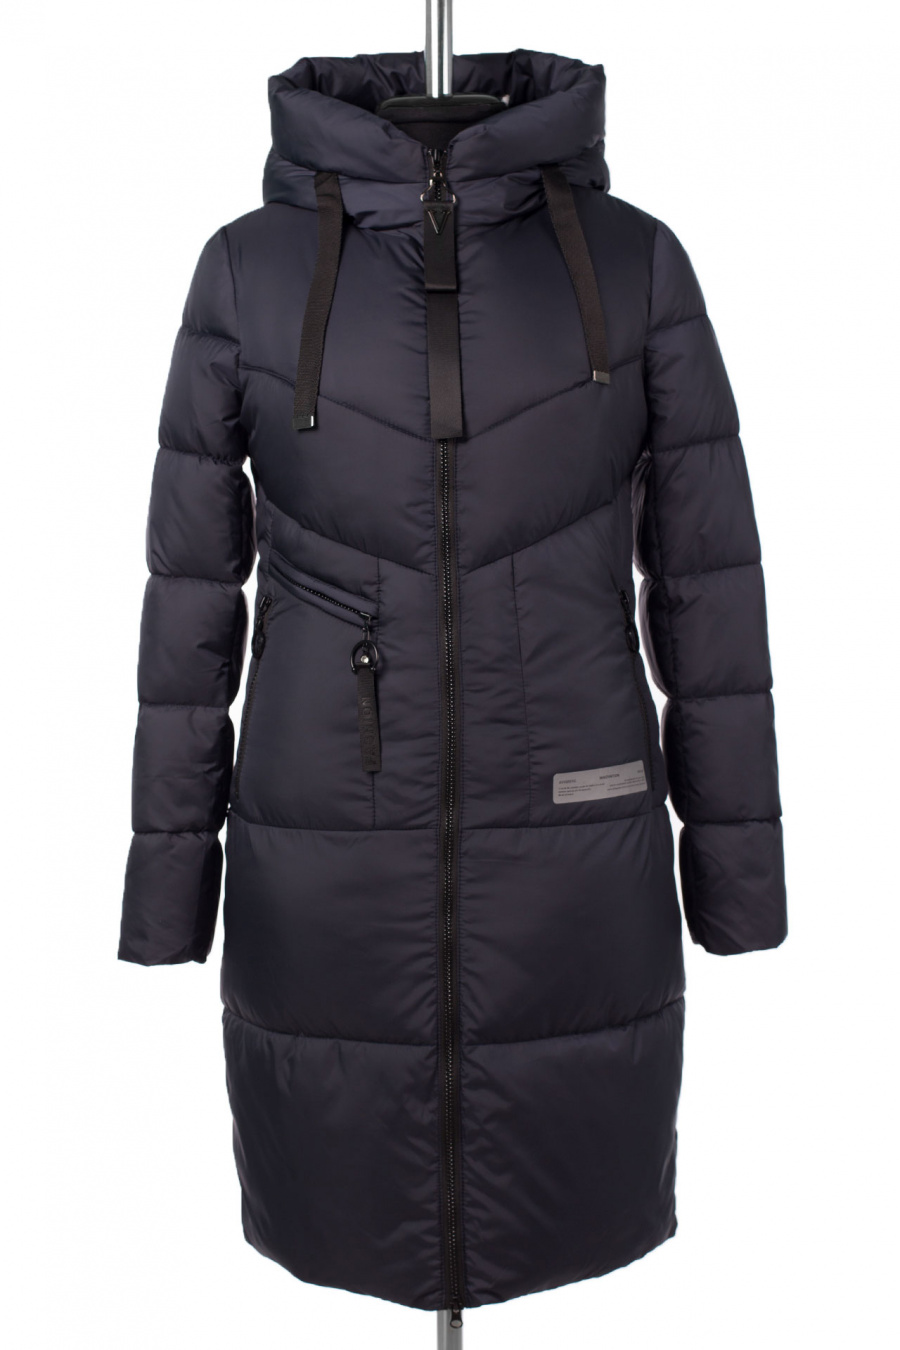 05-2070 Куртка женская зимняя SNOW (Биопух 300) Плащевка синий